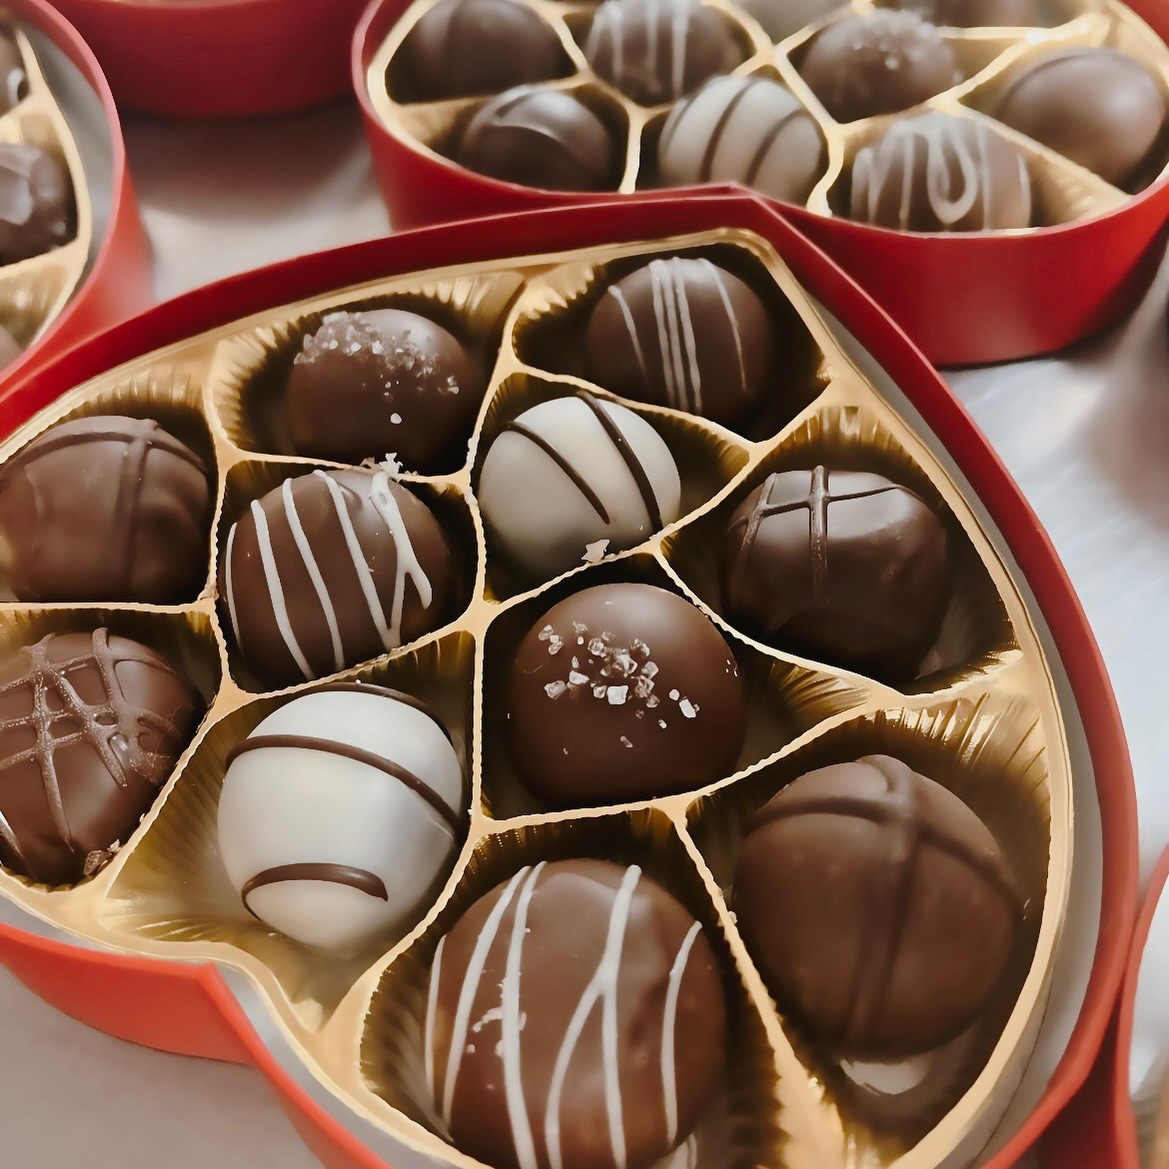 Heart Chocolate Truffle Box - No Whey Chocolate